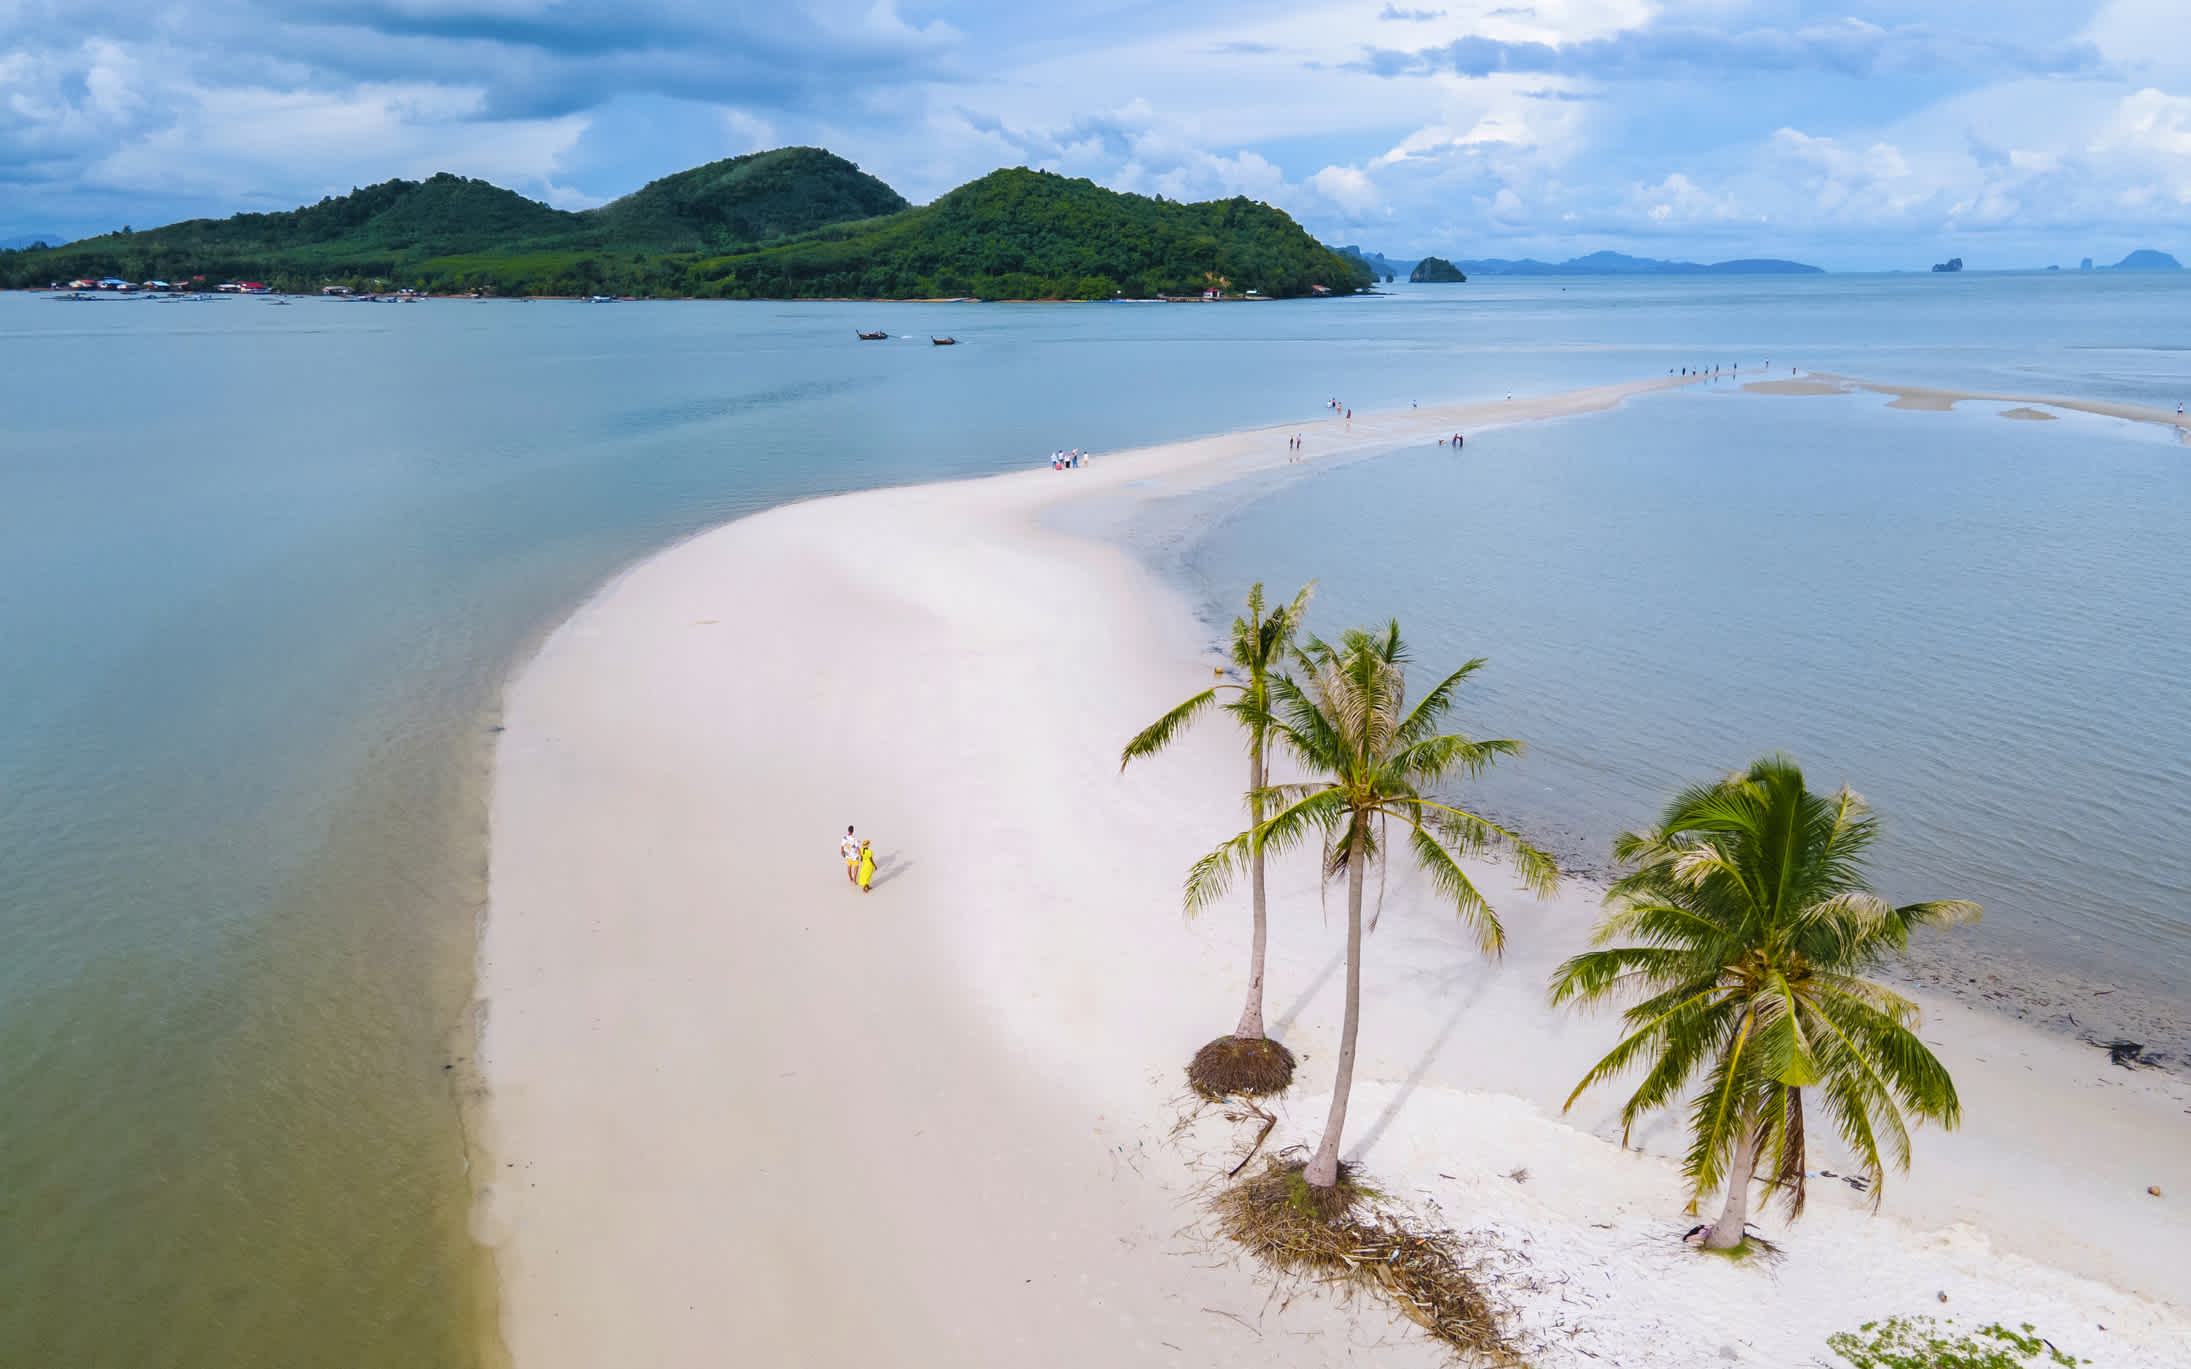 Vue aérienne de la plage avec des palmiers sur l'île de Koh Yao Yai, Thaïlande.